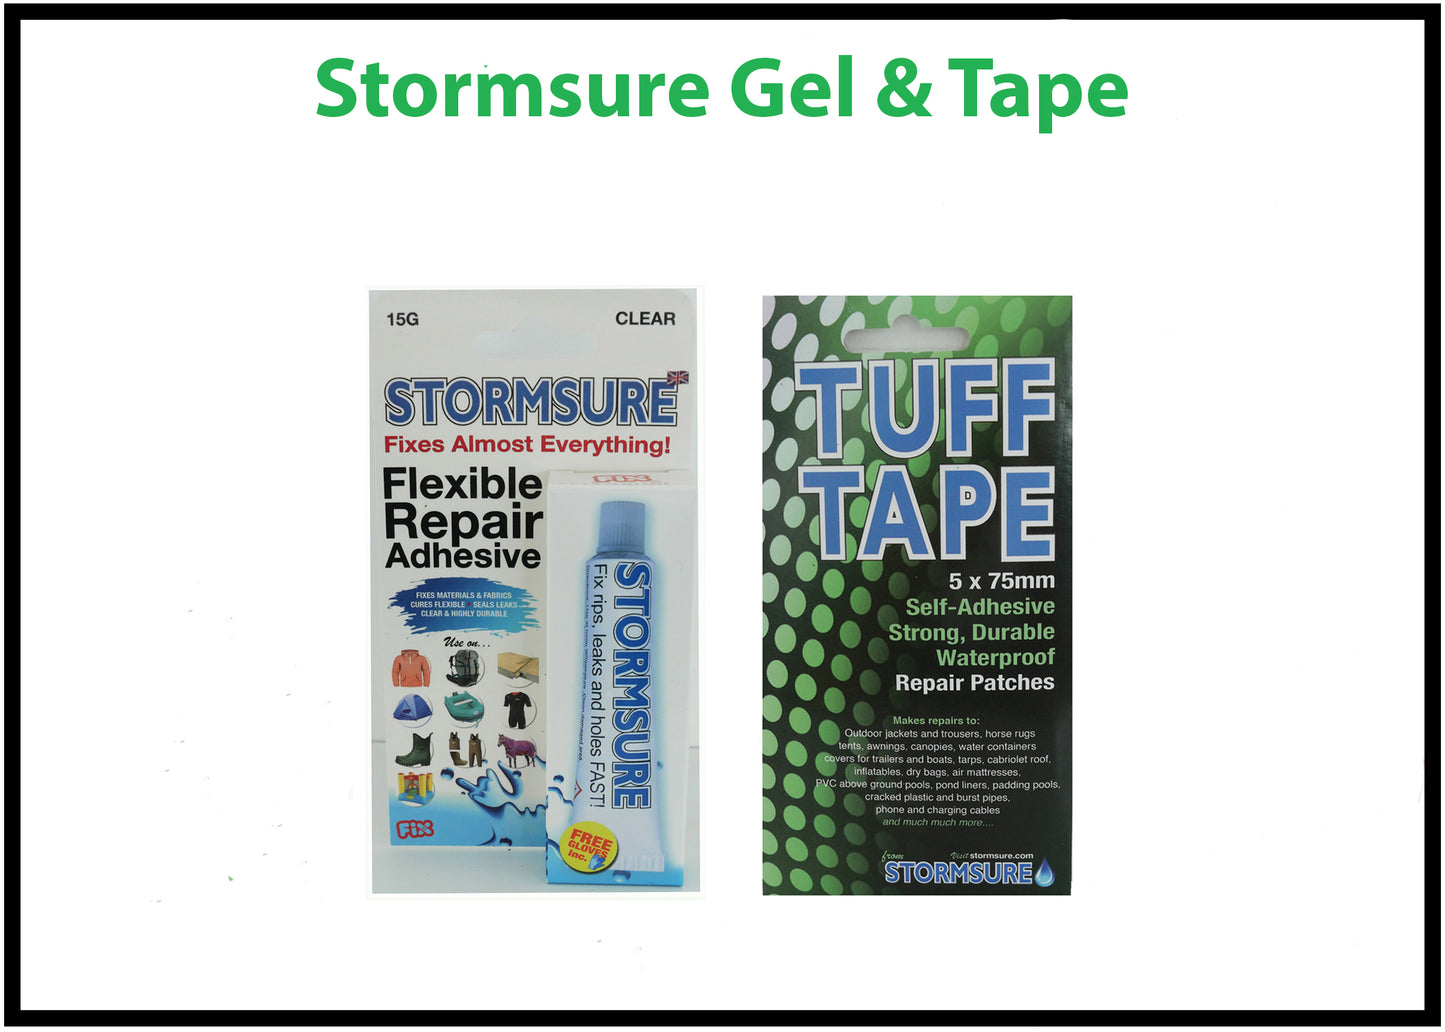 Stormsure repair adhesives